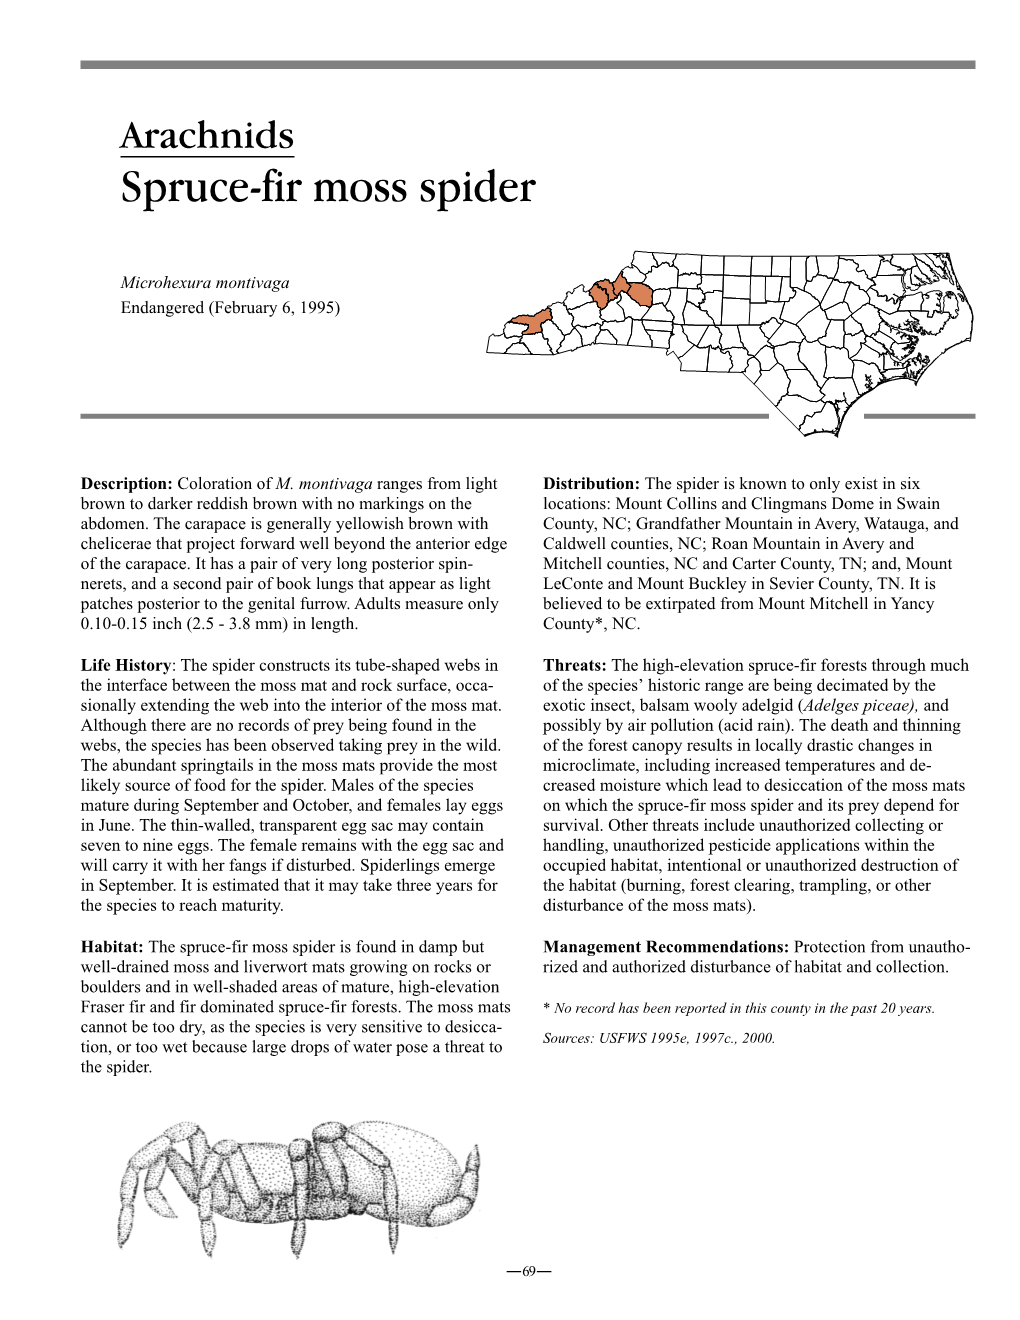 Spruce-Fir Moss Spider